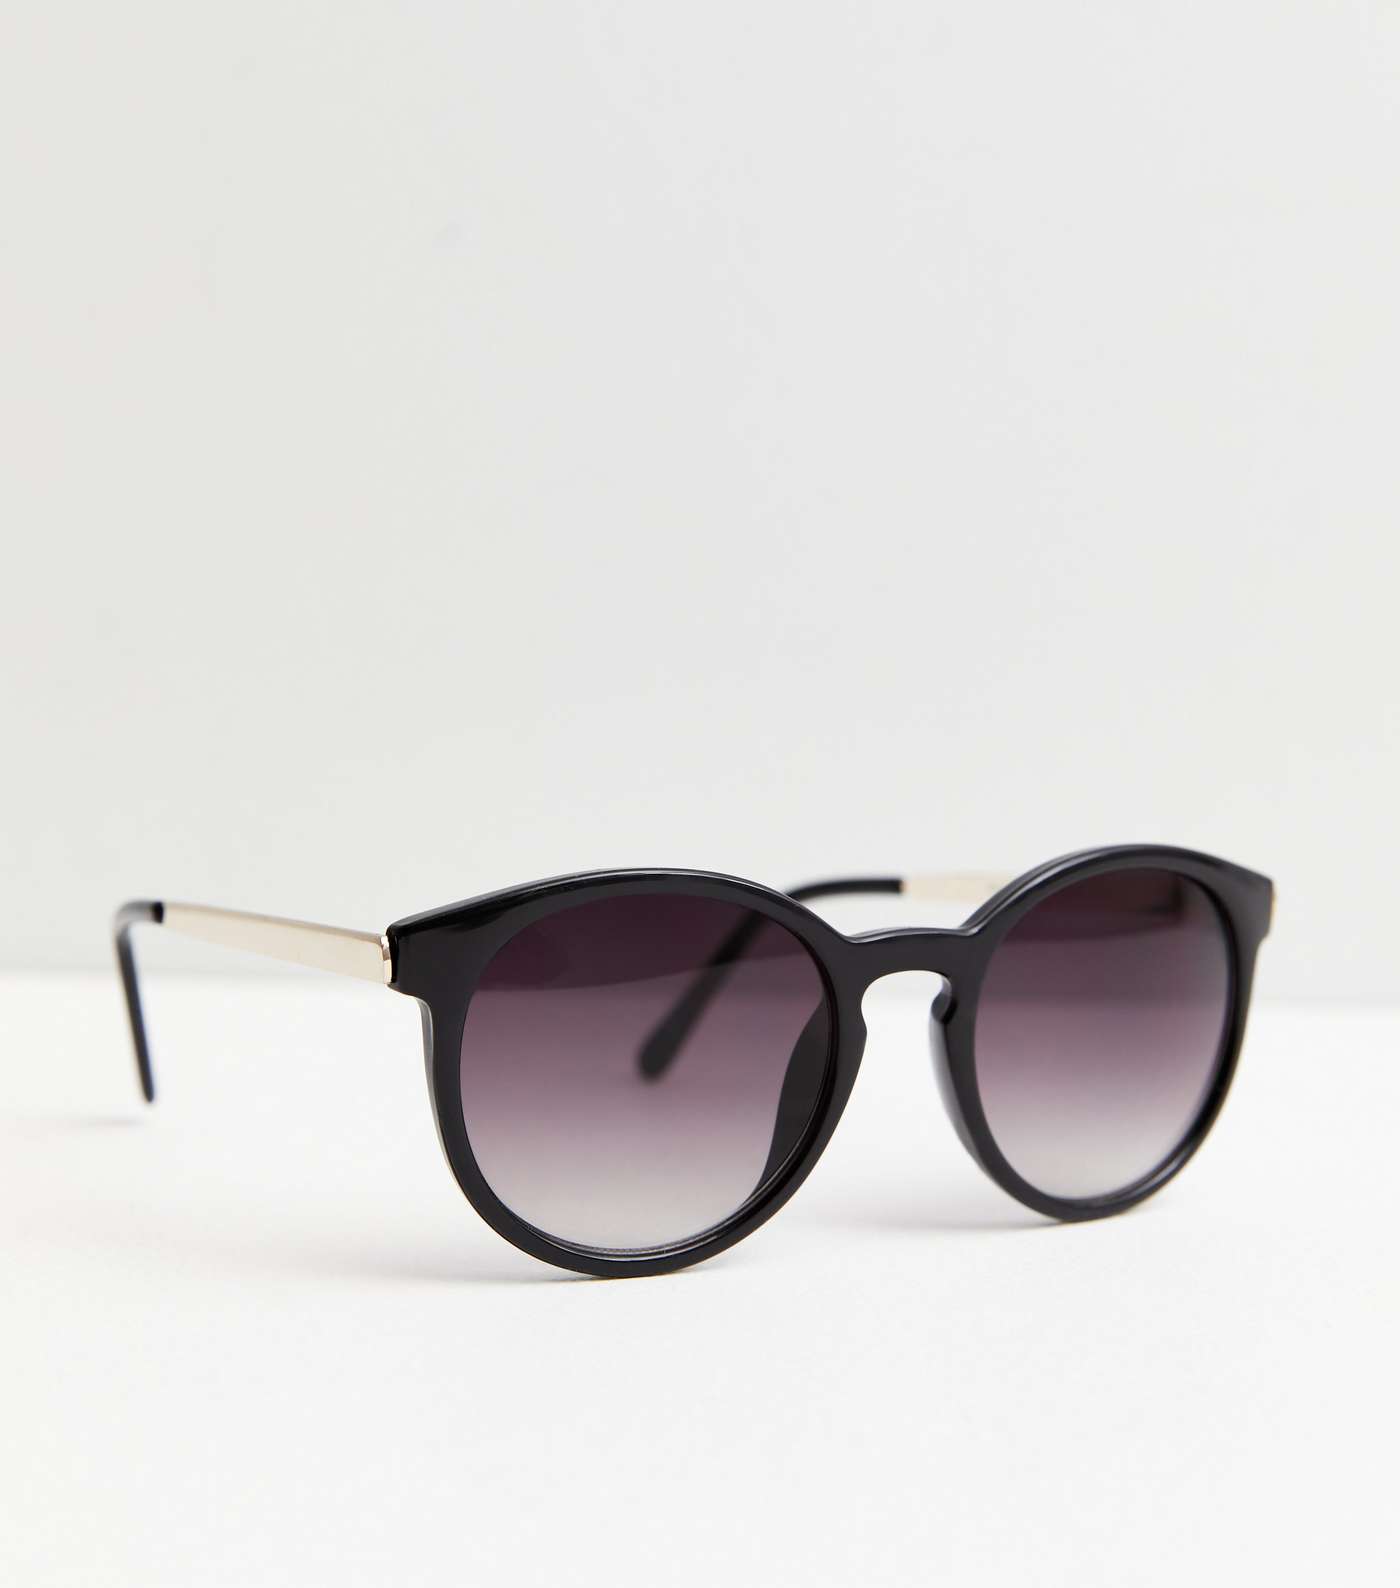 Black Round Metallic Trim Sunglasses Image 2